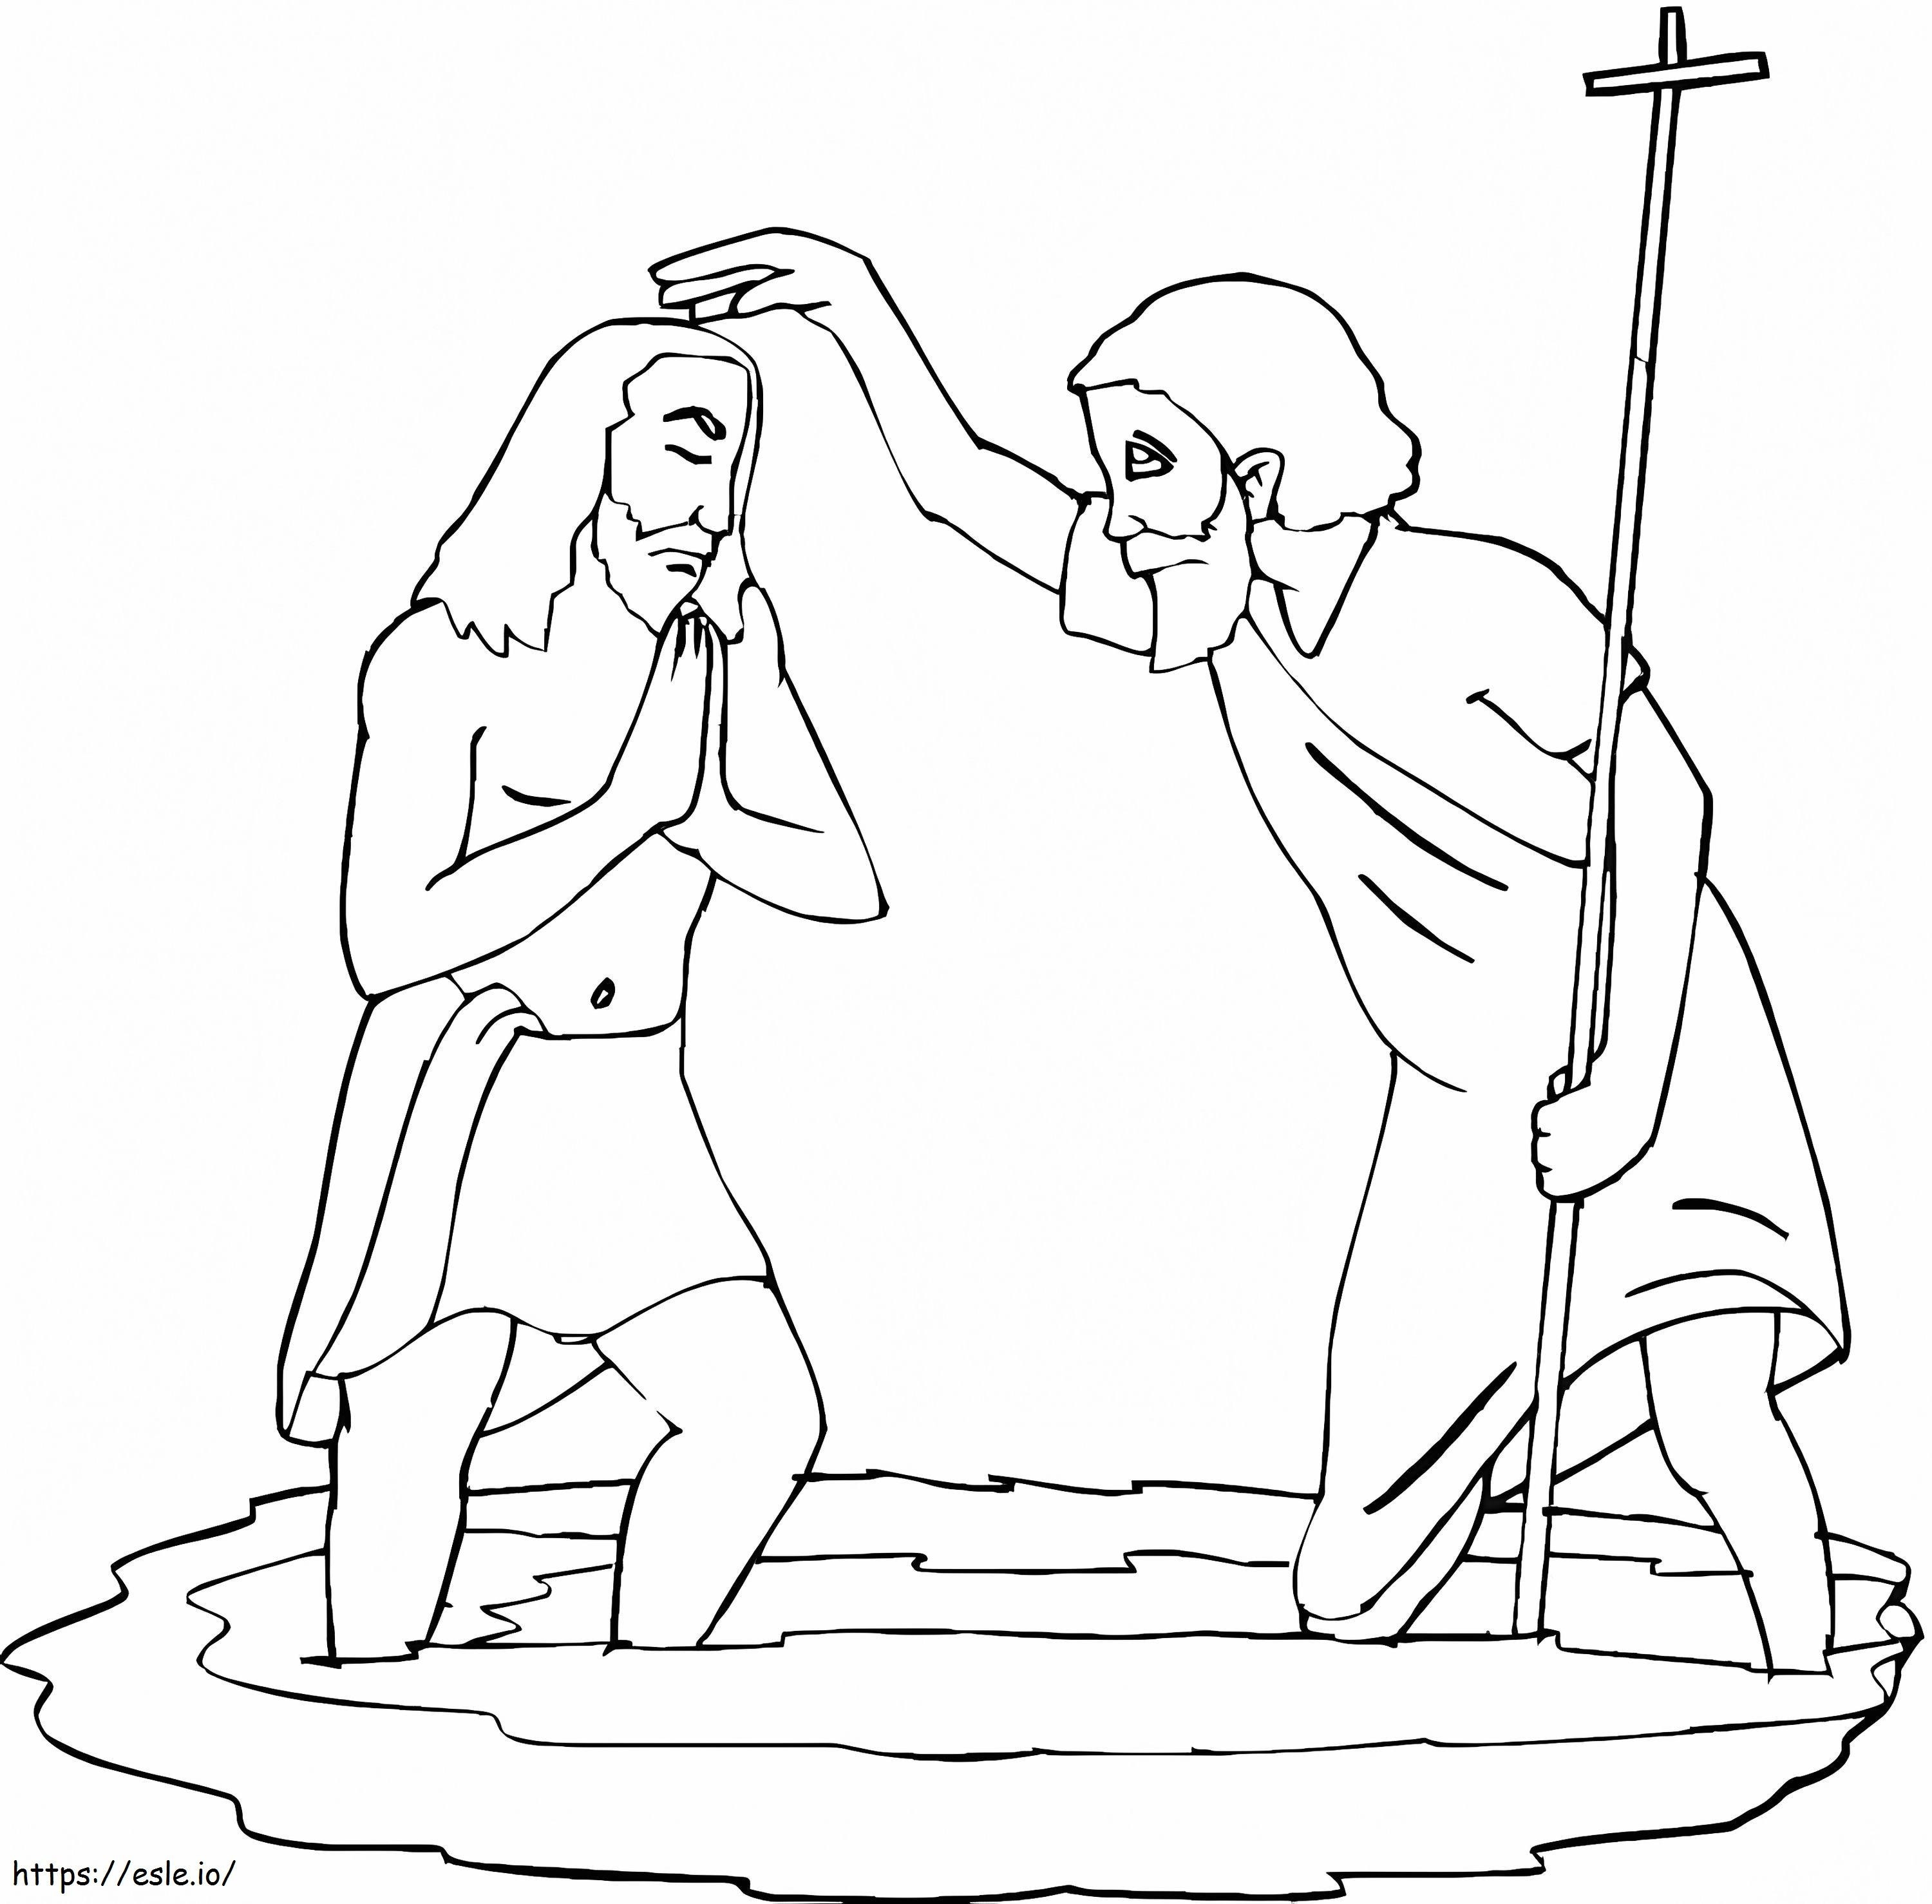 John Baptising Jesus coloring page